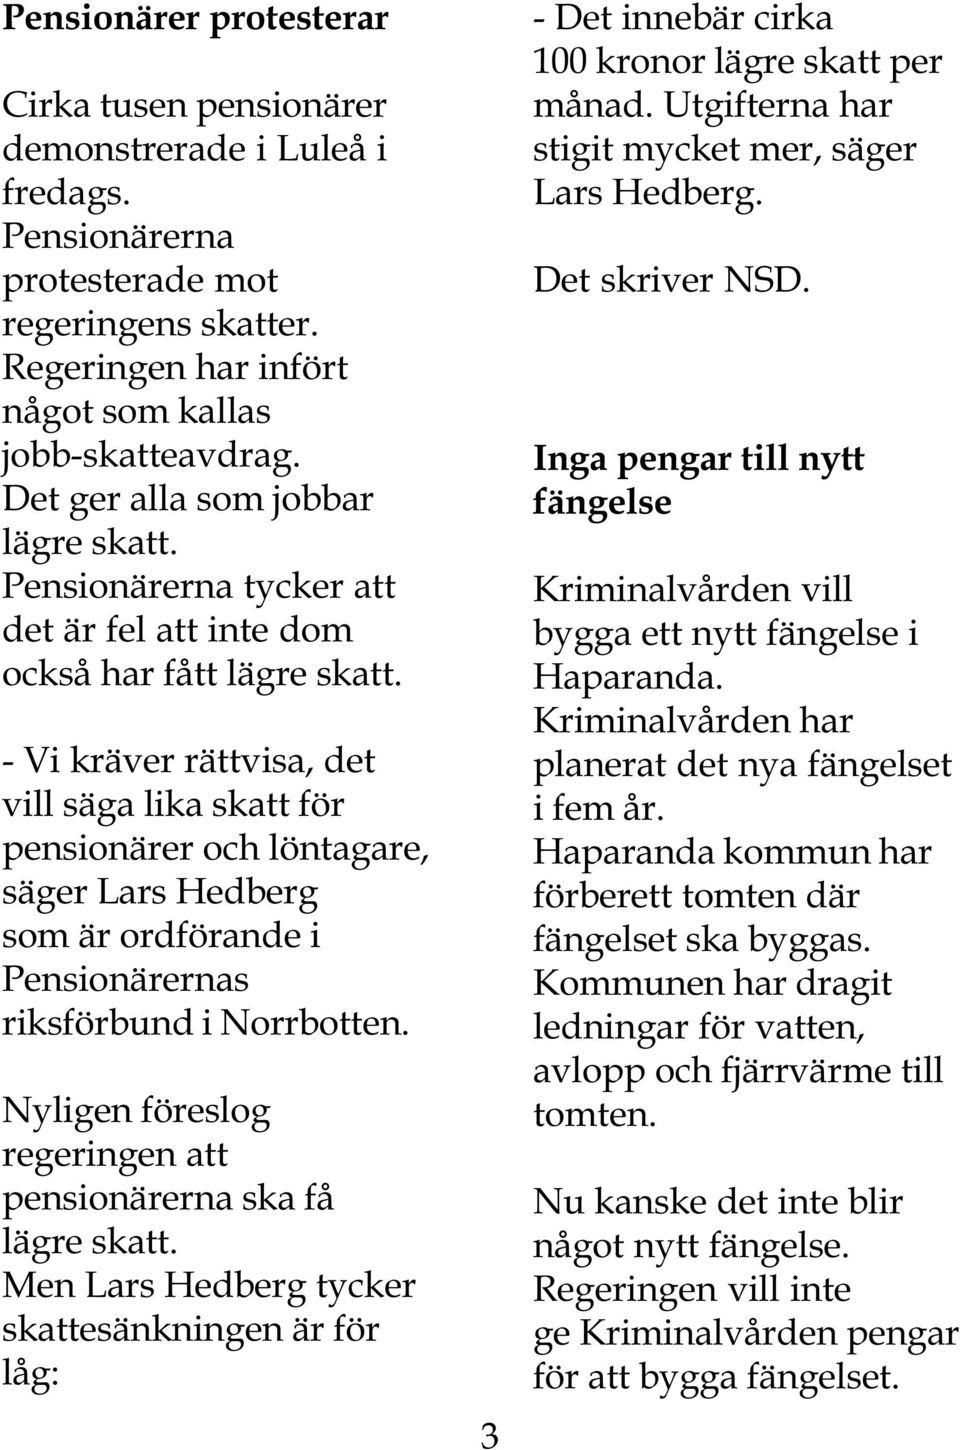 - Vi kräver rättvisa, det vill säga lika skatt för pensionärer och löntagare, säger Lars Hedberg som är ordförande i Pensionärernas riksförbund i Norrbotten.